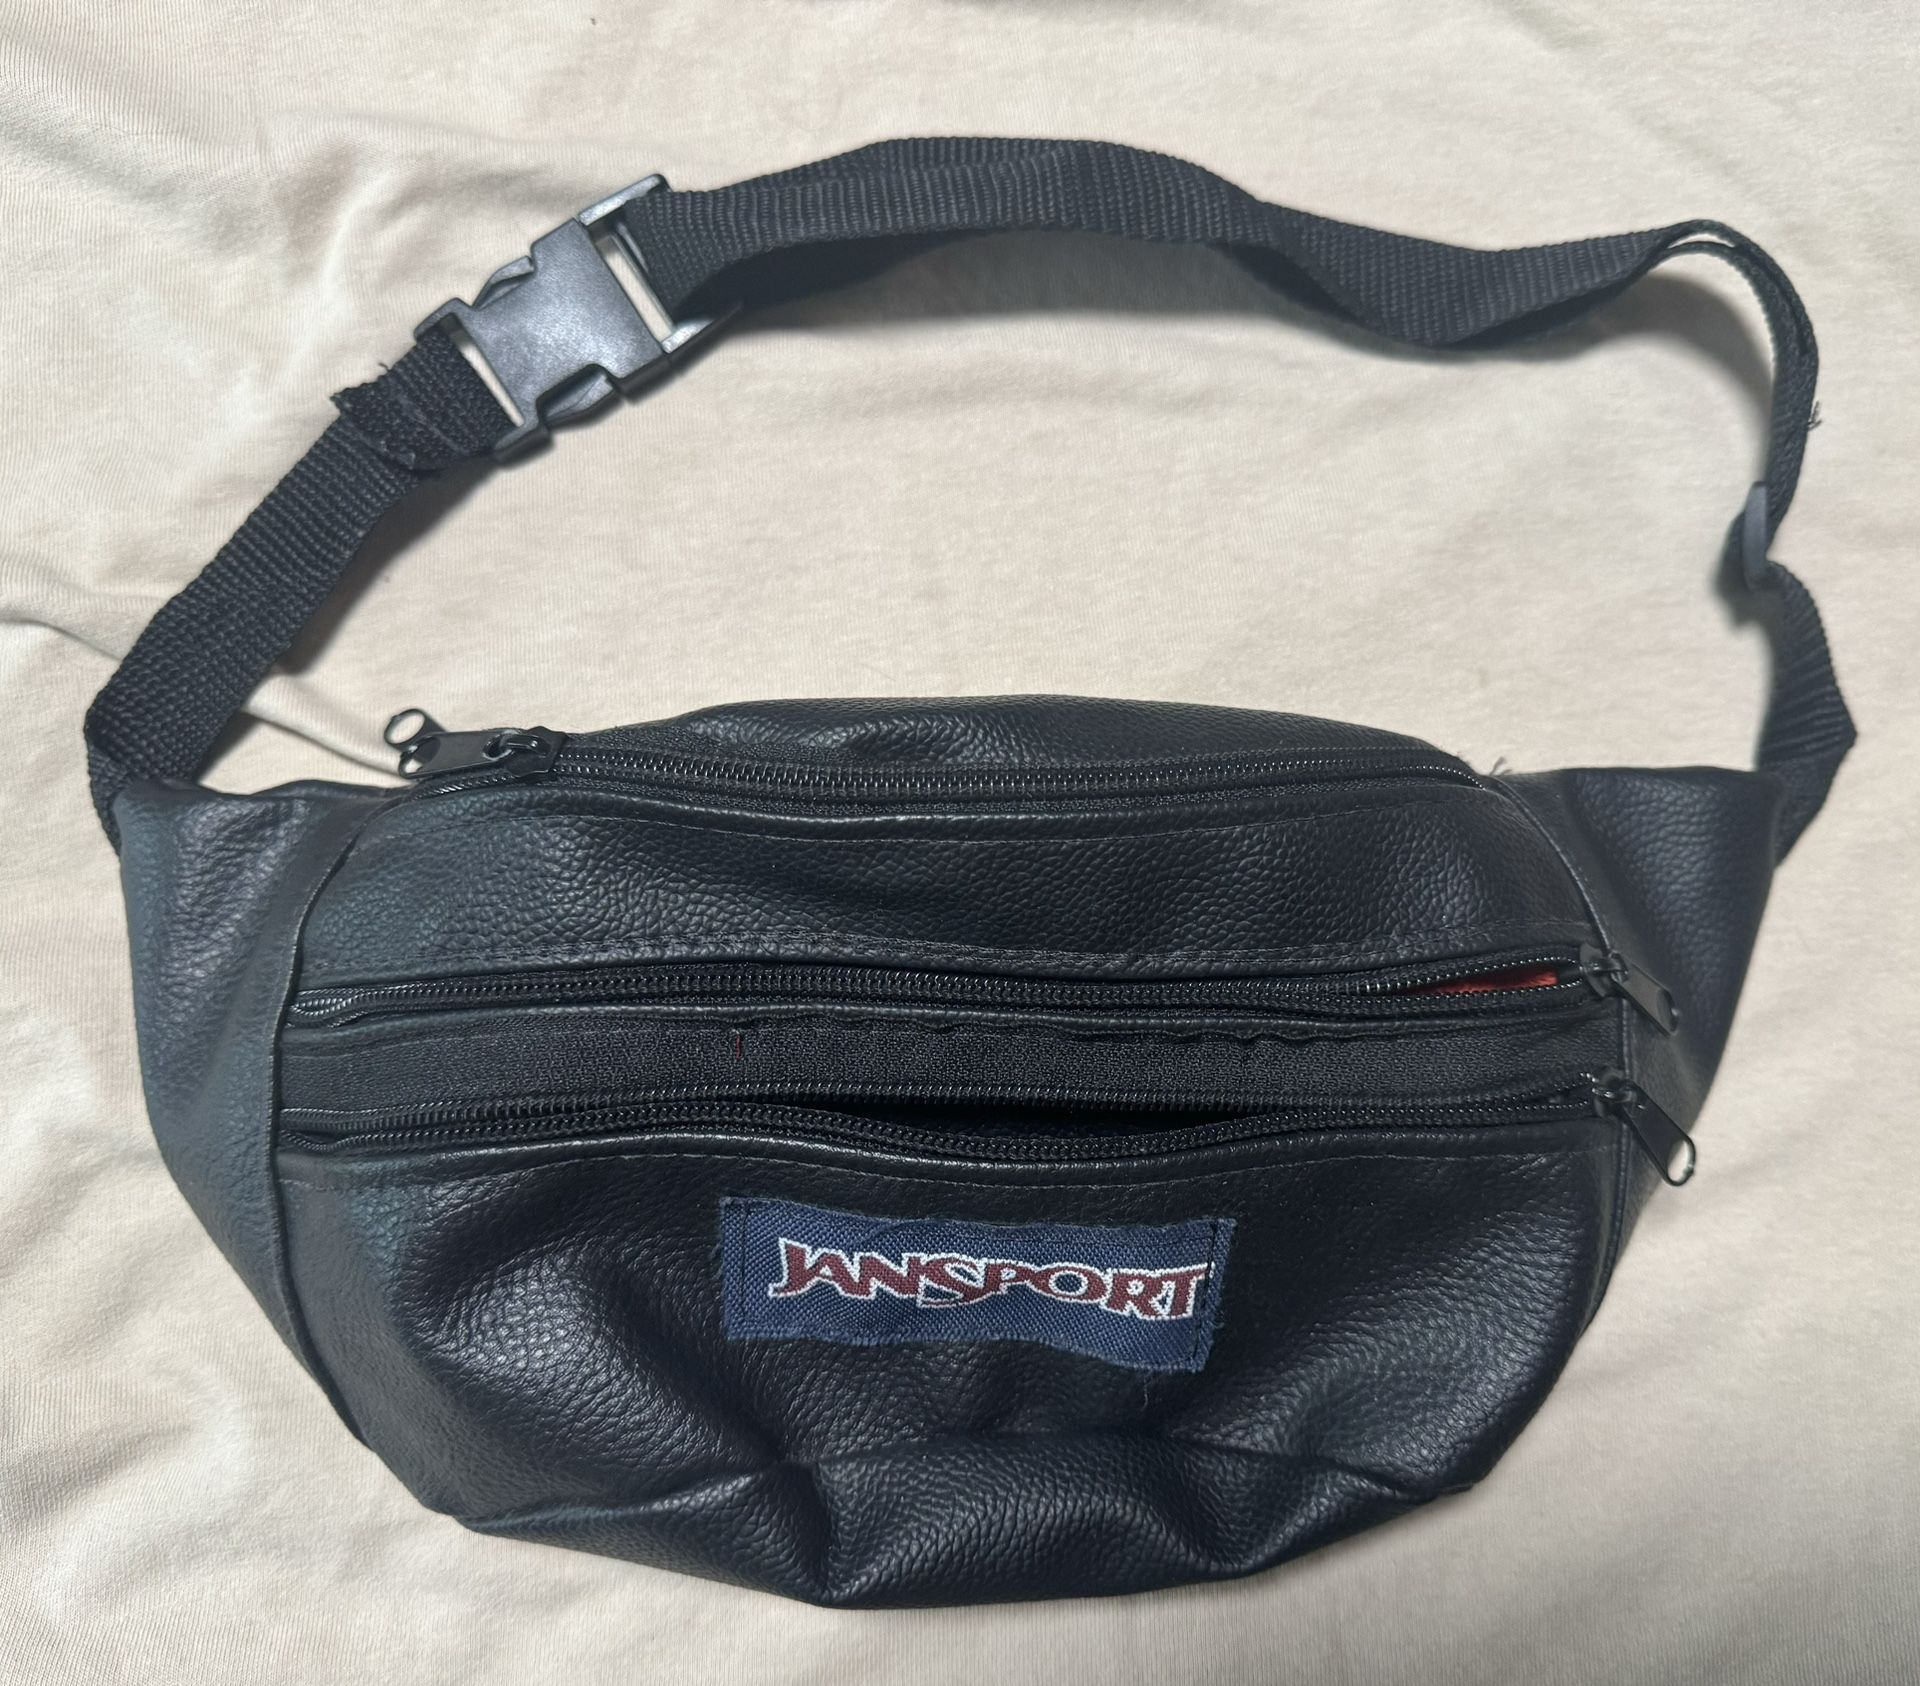 Travel bag Jansport black Asking $10